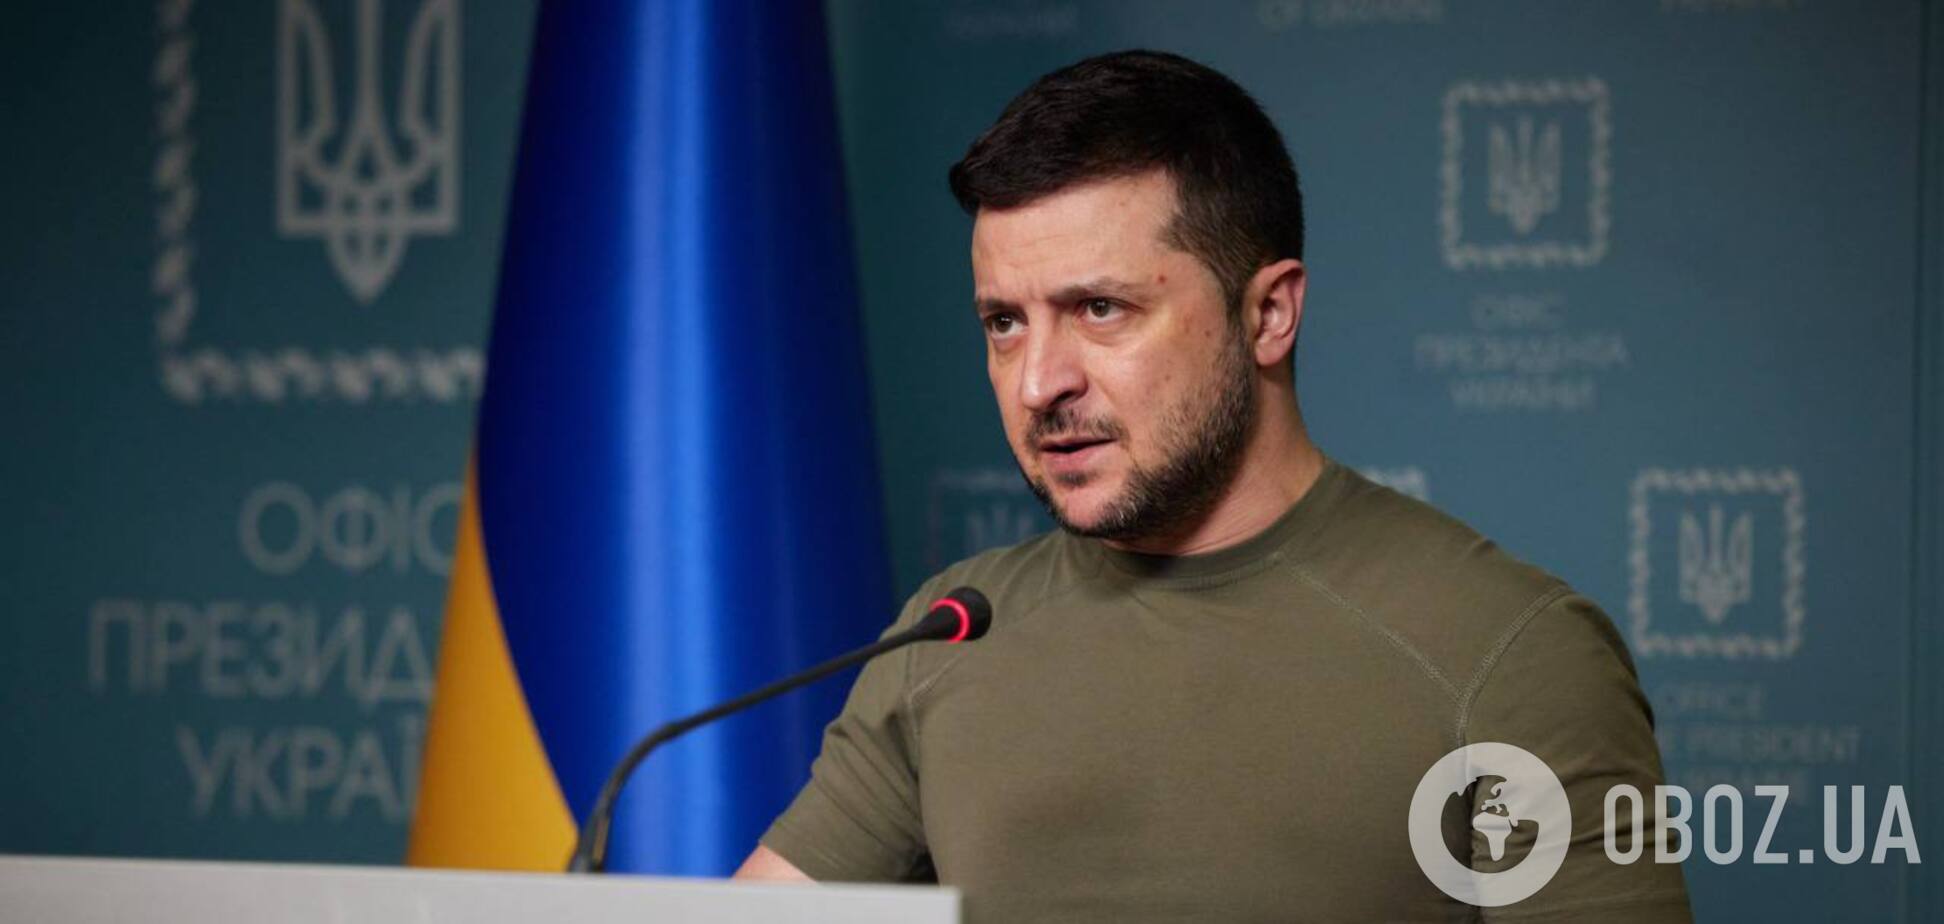 'Российское вторжение в Украину разрушило все, на чем держалась безопасность в регионе': Зеленский выступил с мощным заявлением. Видео